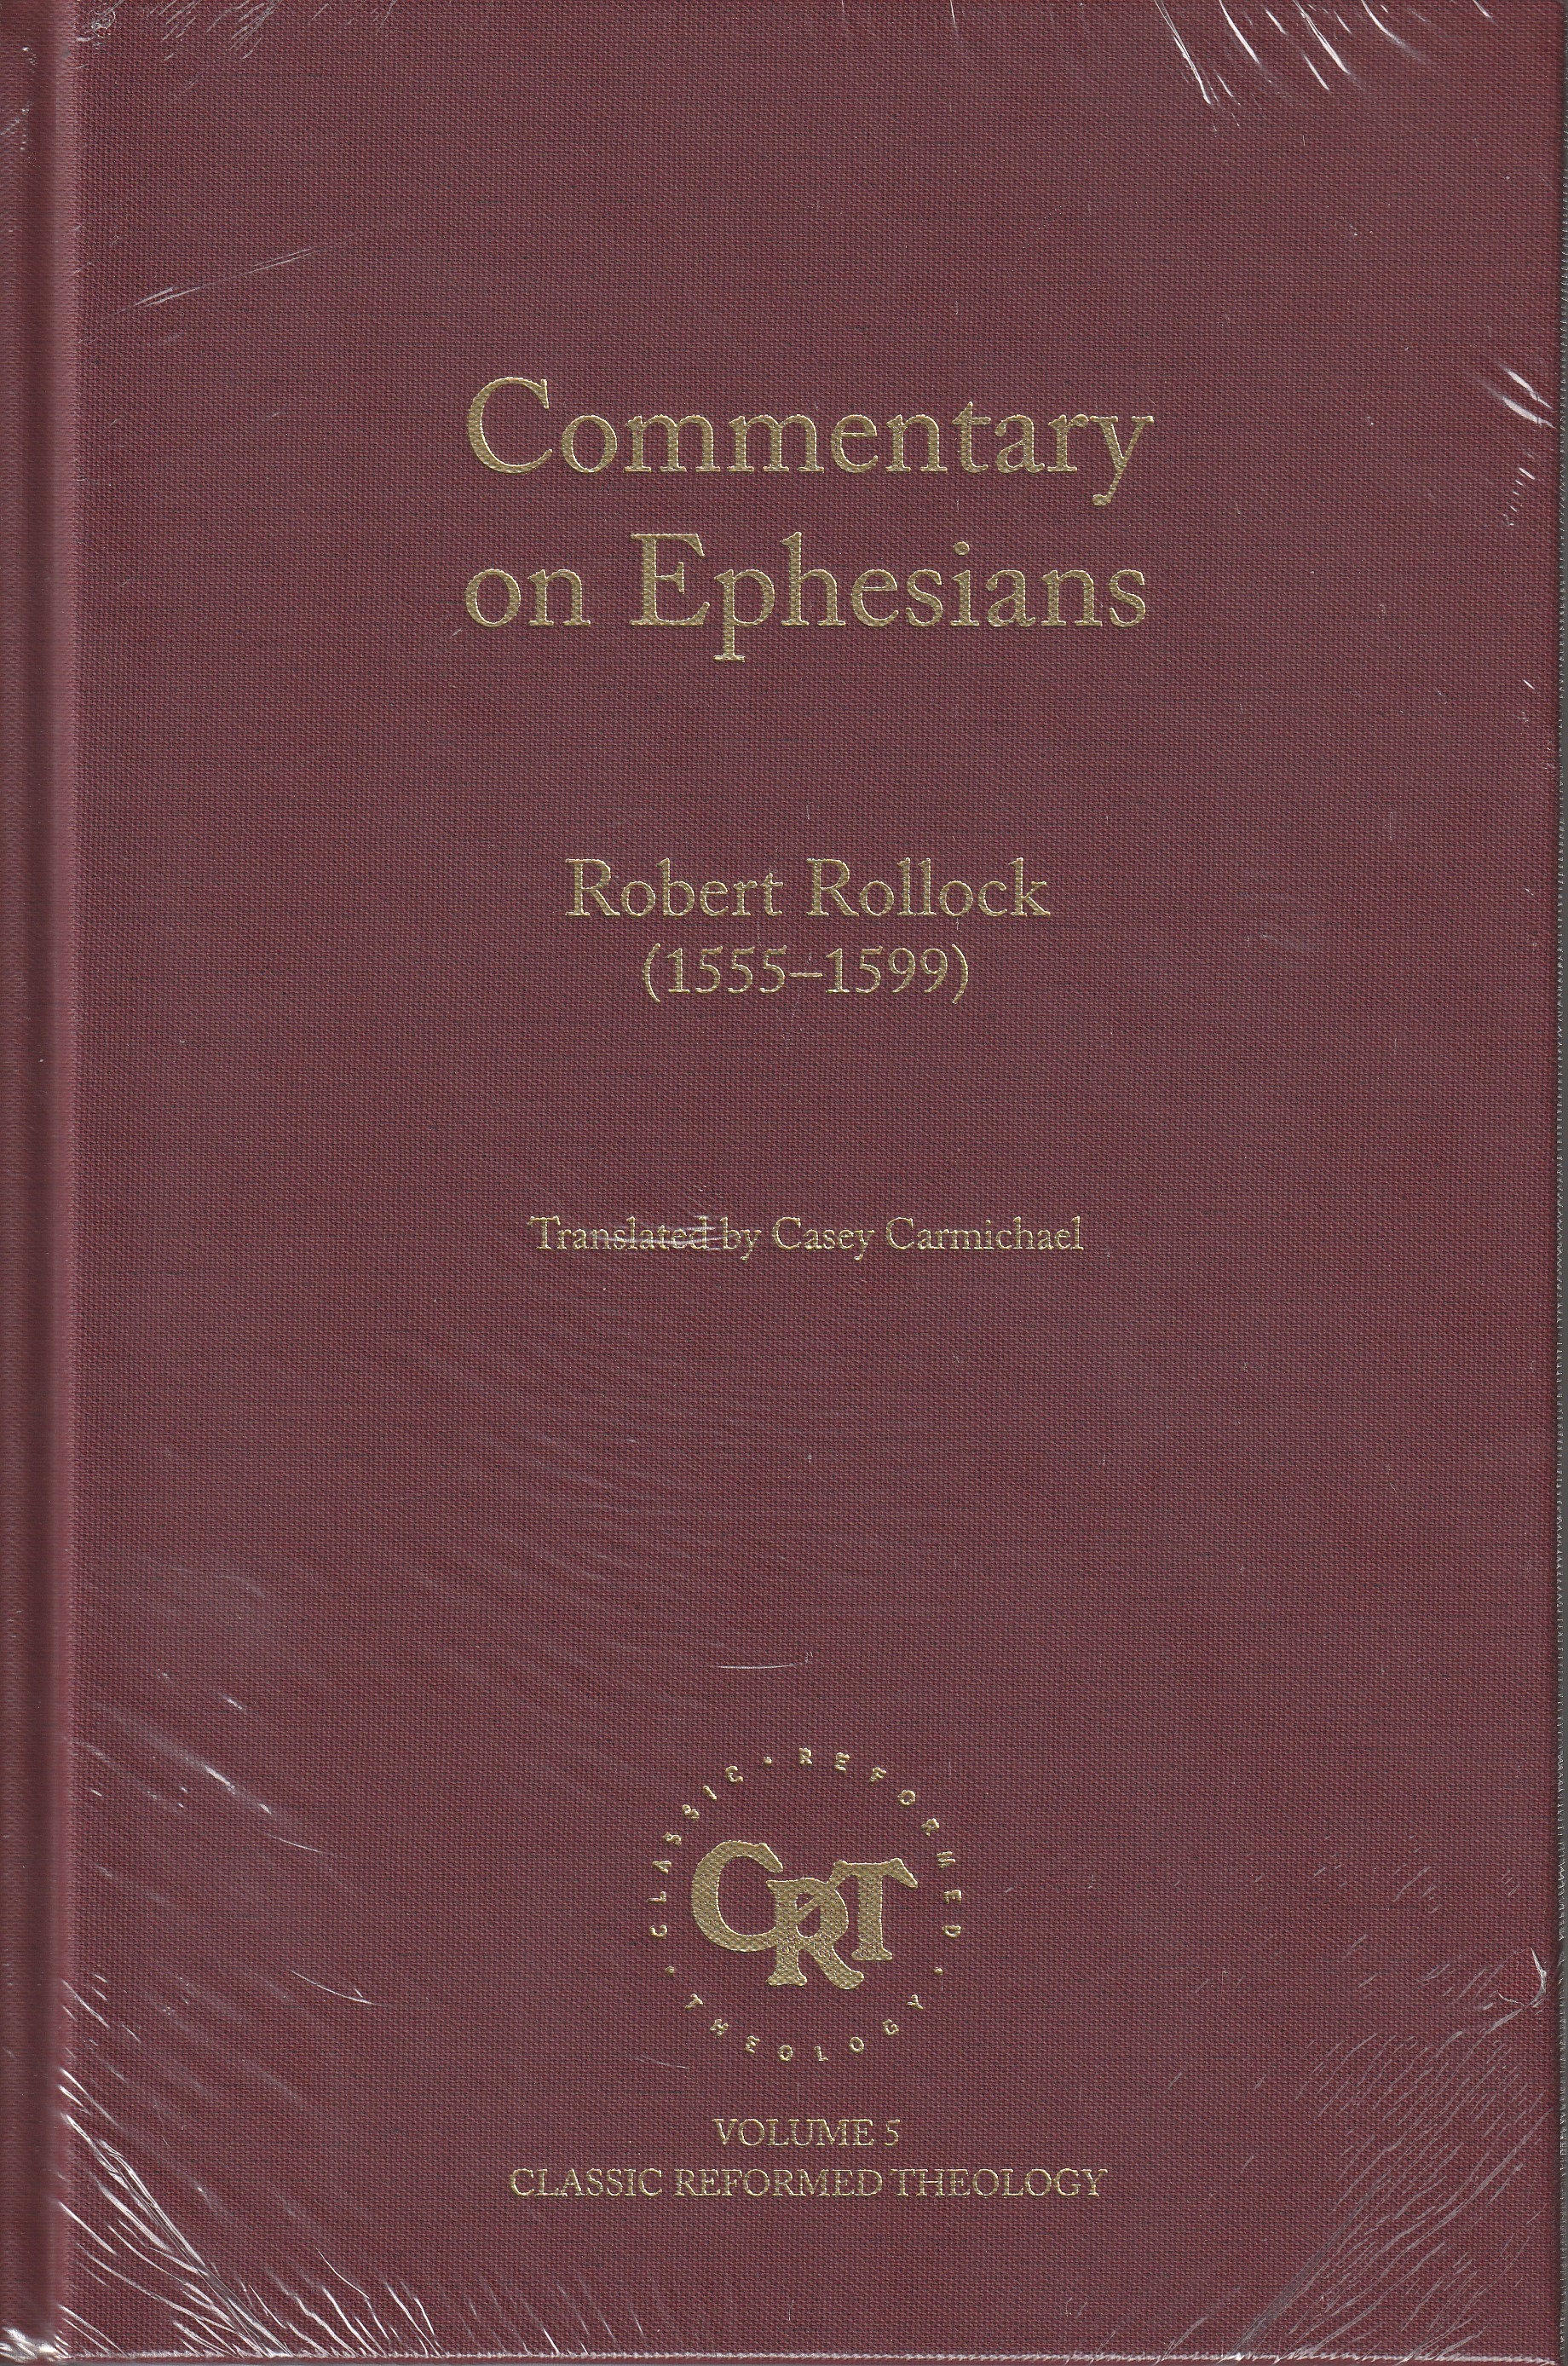 Commentary on Ephesians (Robert Rollock)